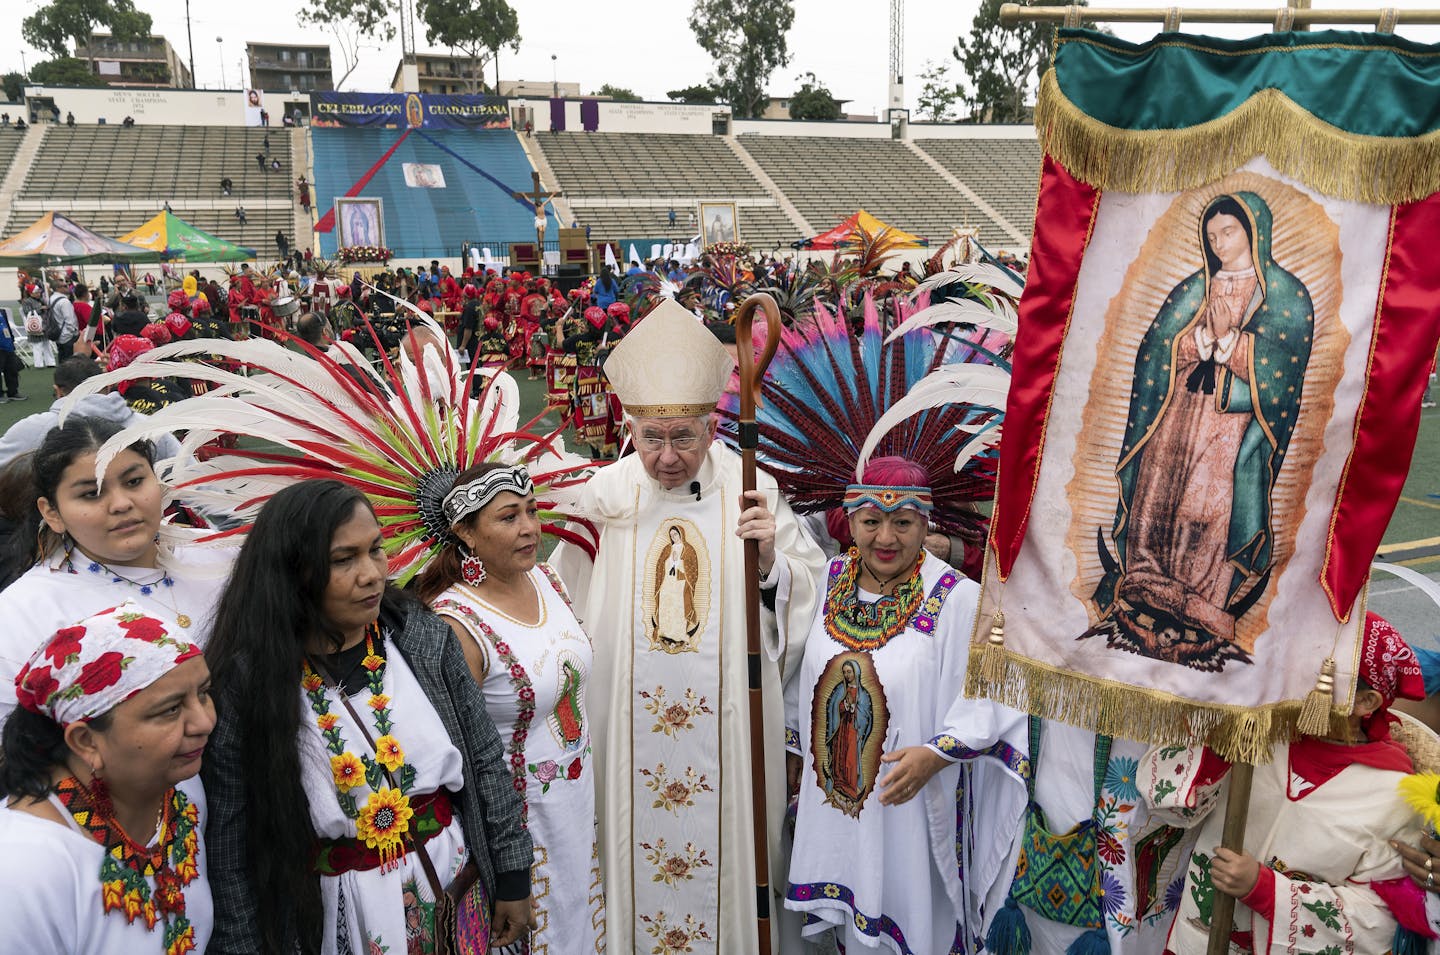 Dia de la Virgen de Guadalupe is an important Mexican celebration